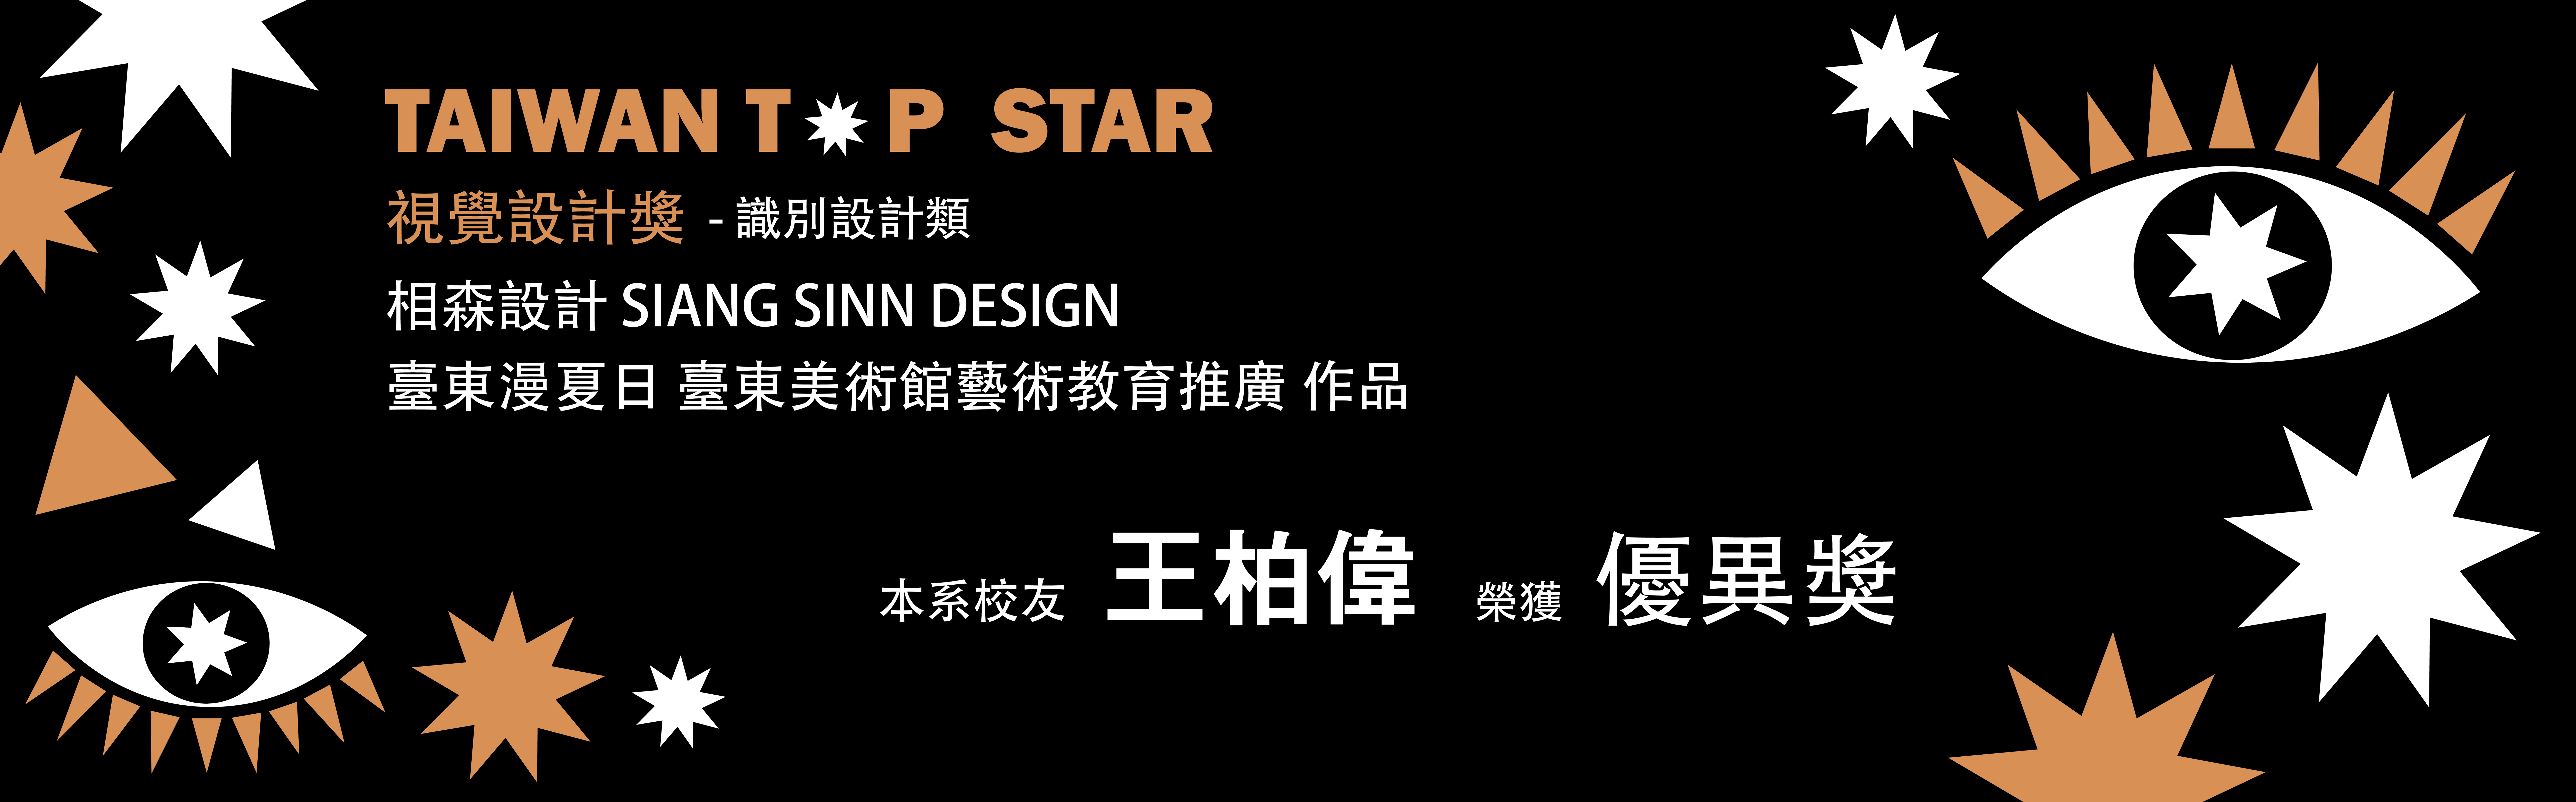 Taiwan Top Star 台灣視覺設計獎 得獎橫幅